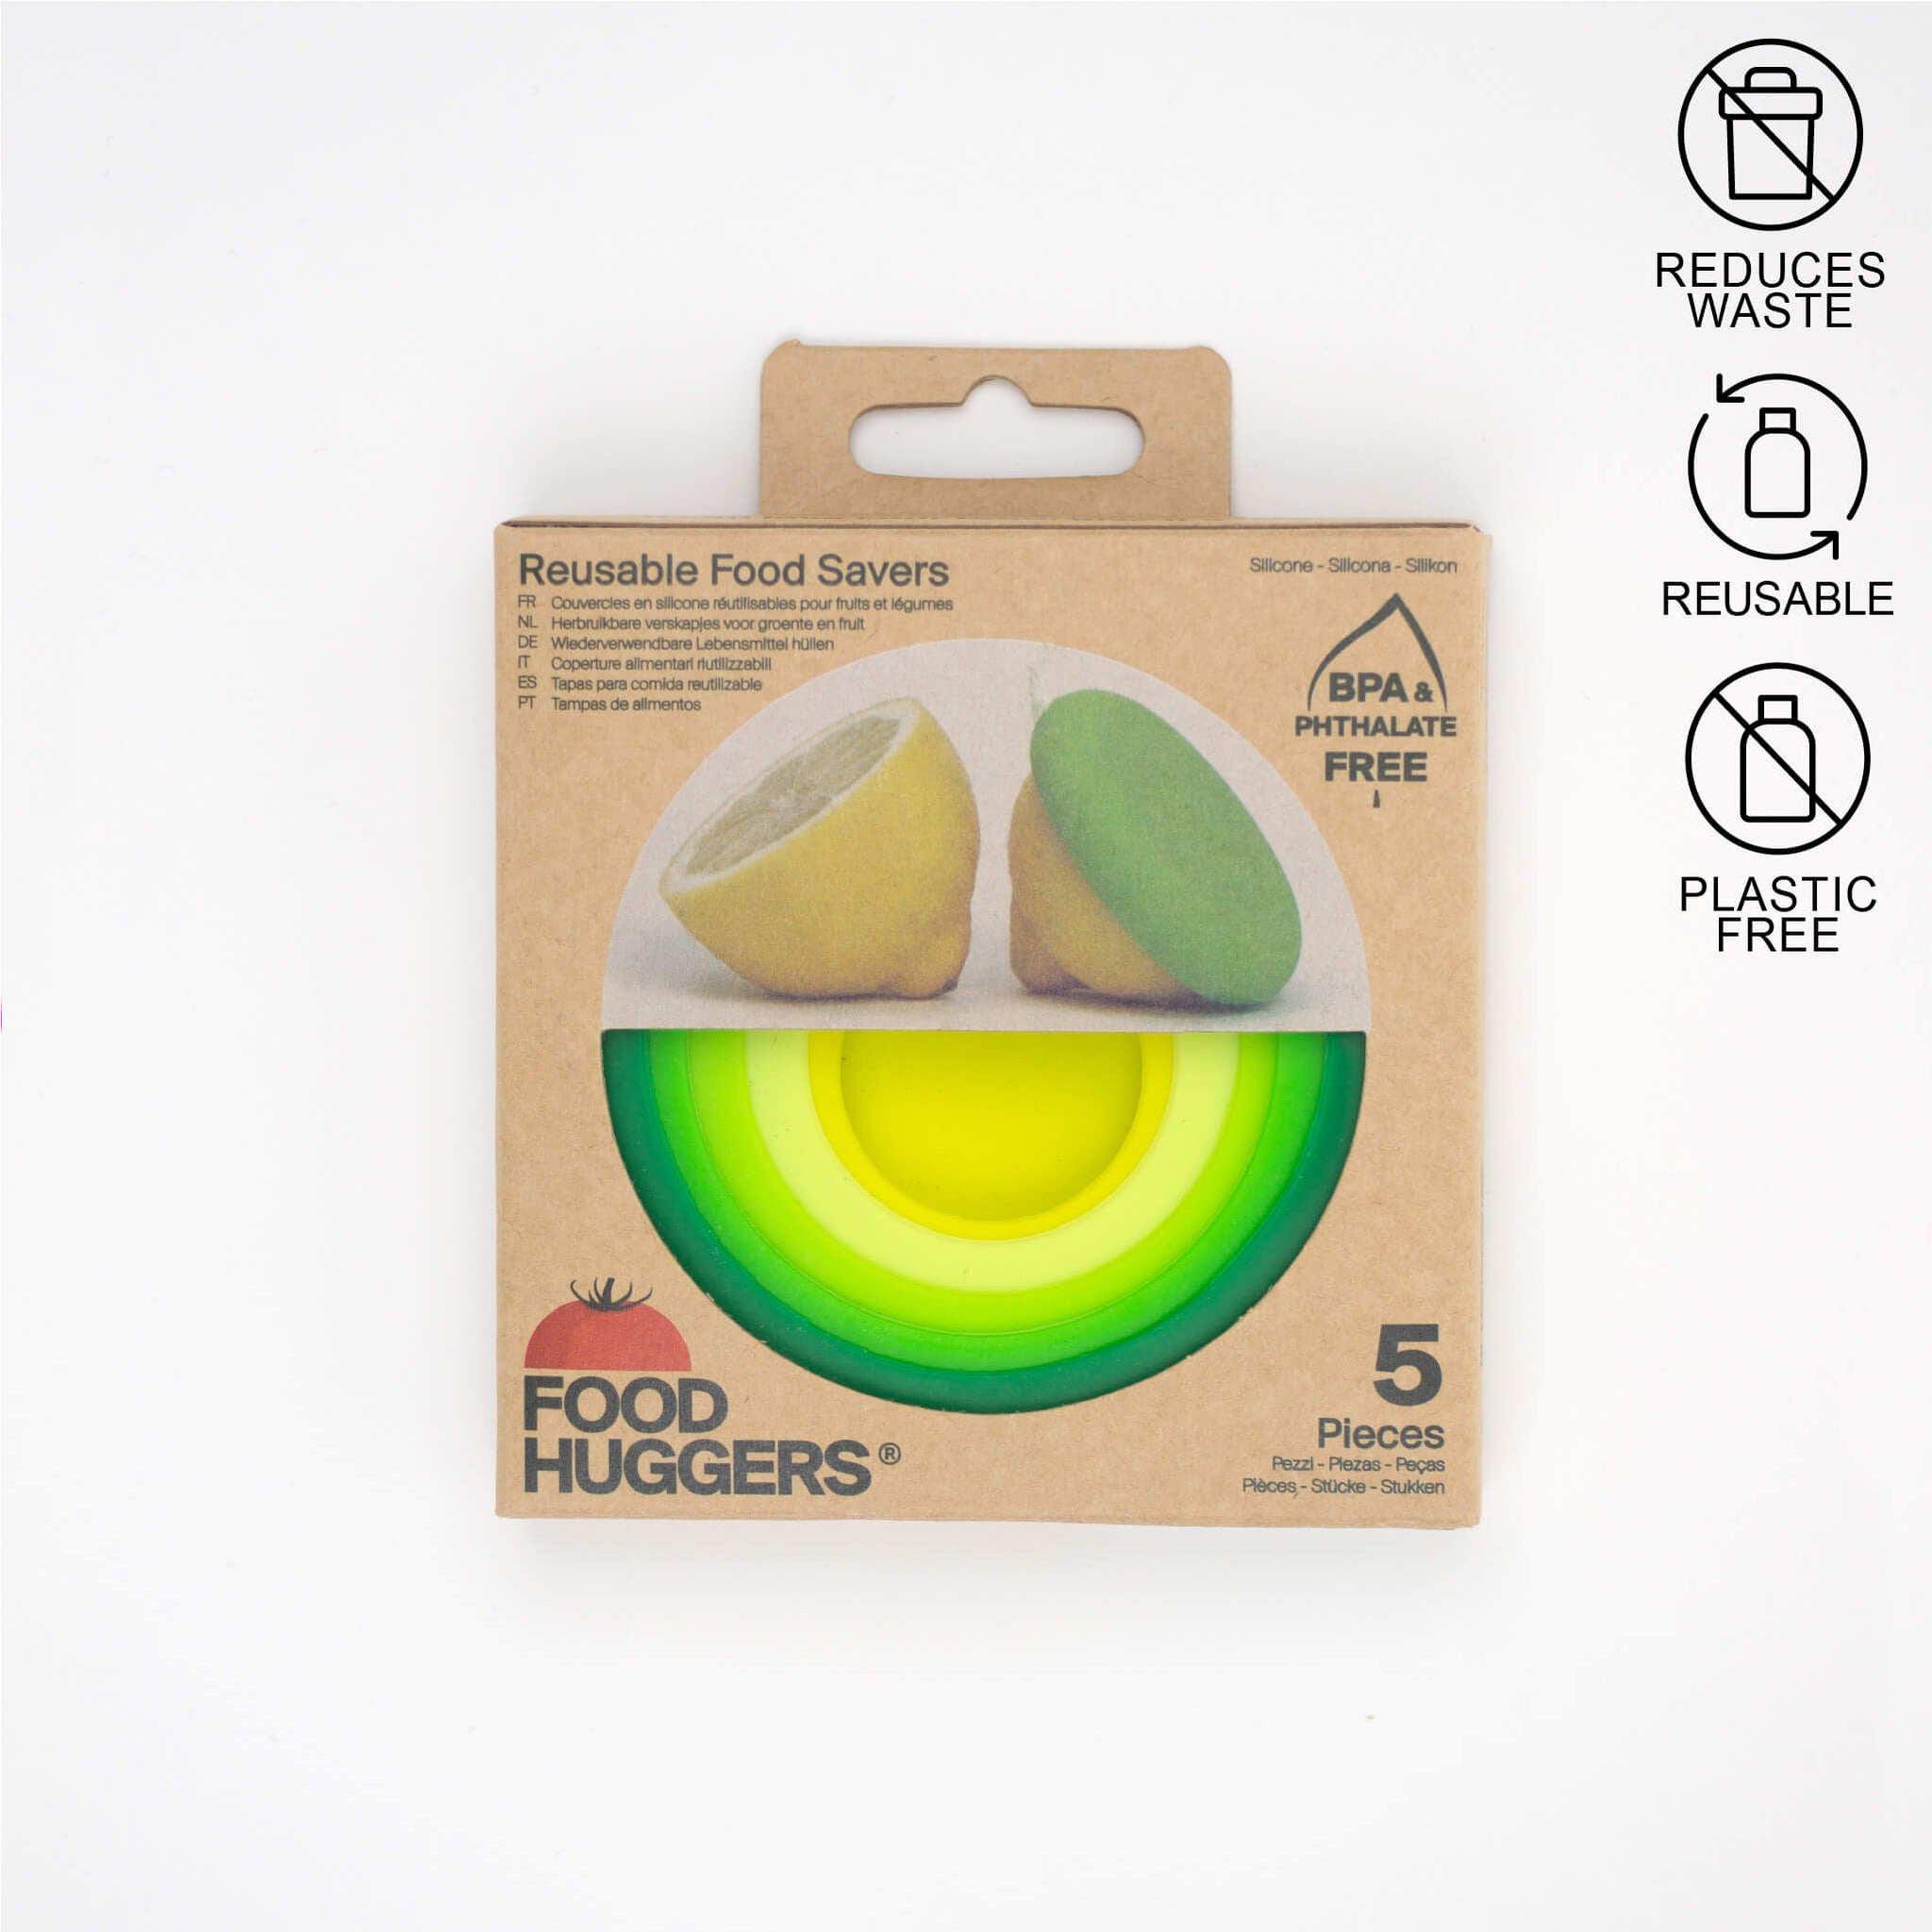 Food Huggers Green range in cardboard package.